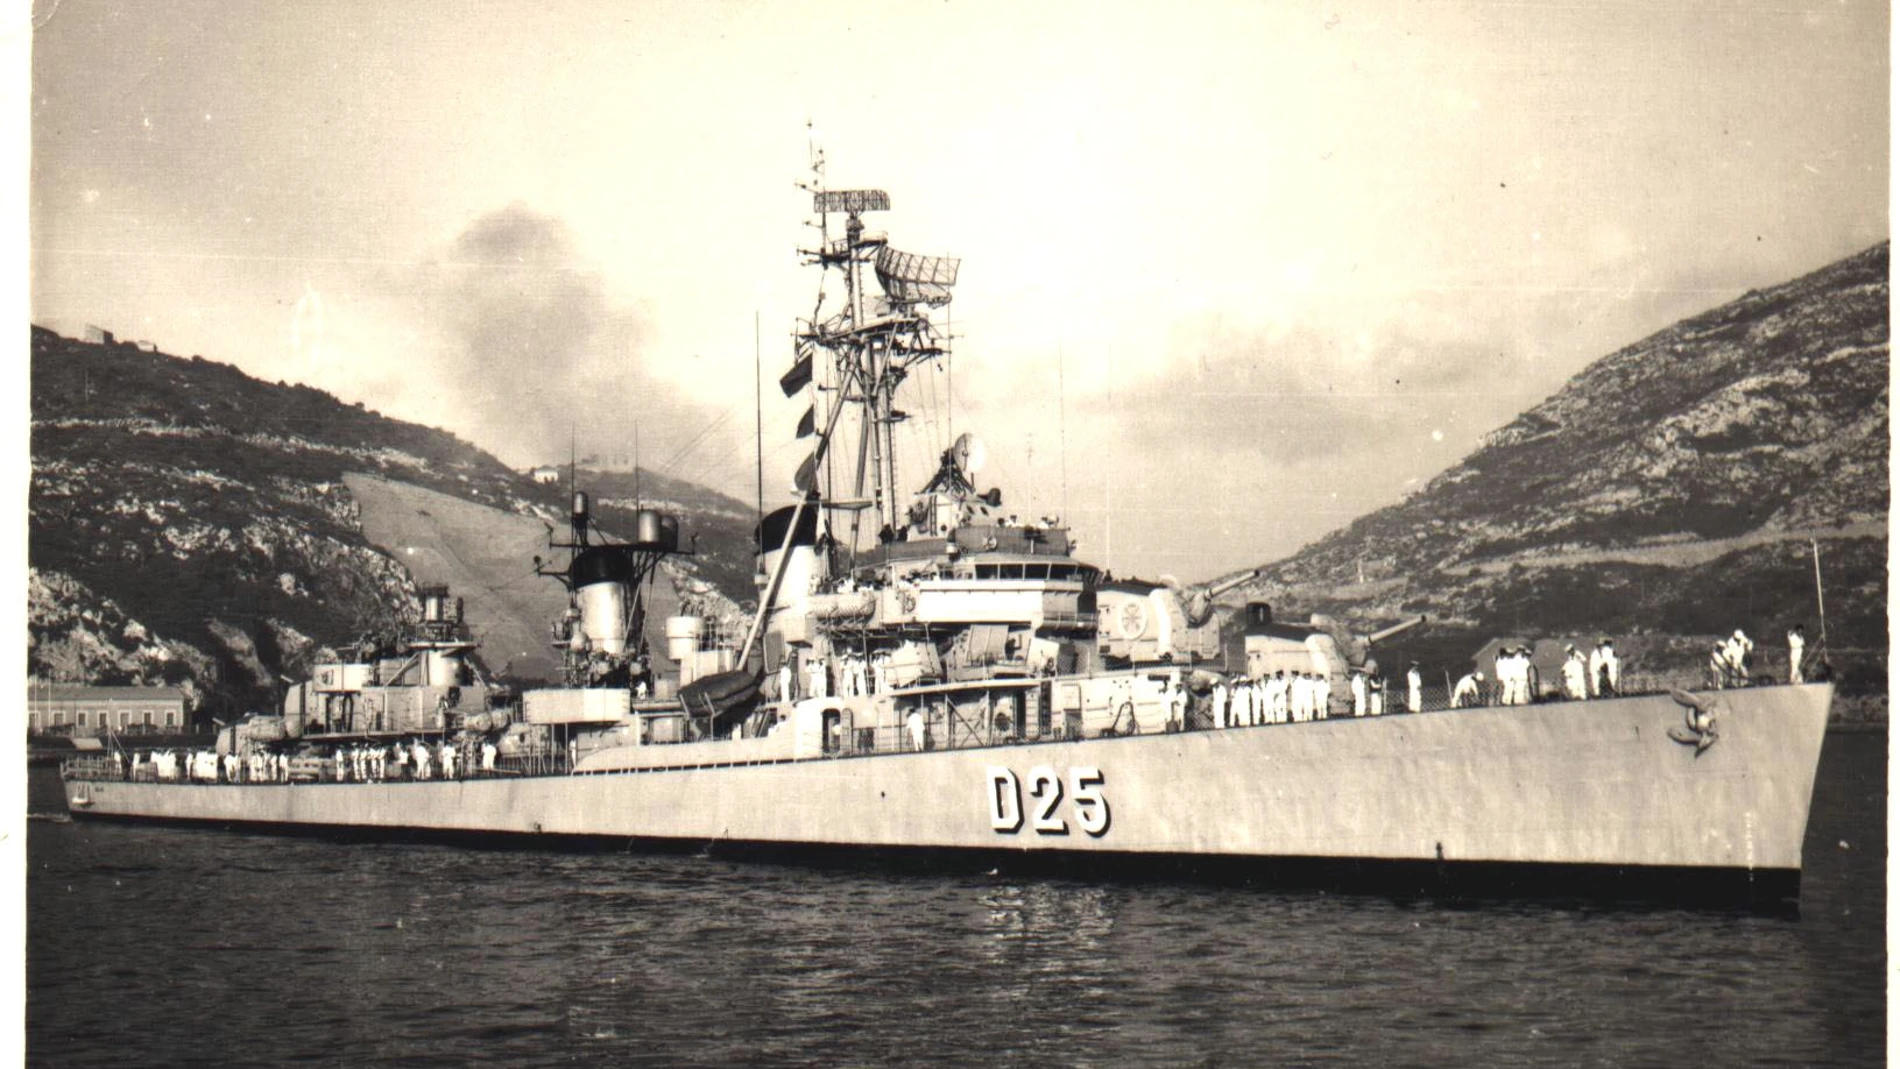 Imágenes de los destructor Jorge Juan D-25 de la Armada, de la clase Lepanto, a su salida del puerto de Cartagena